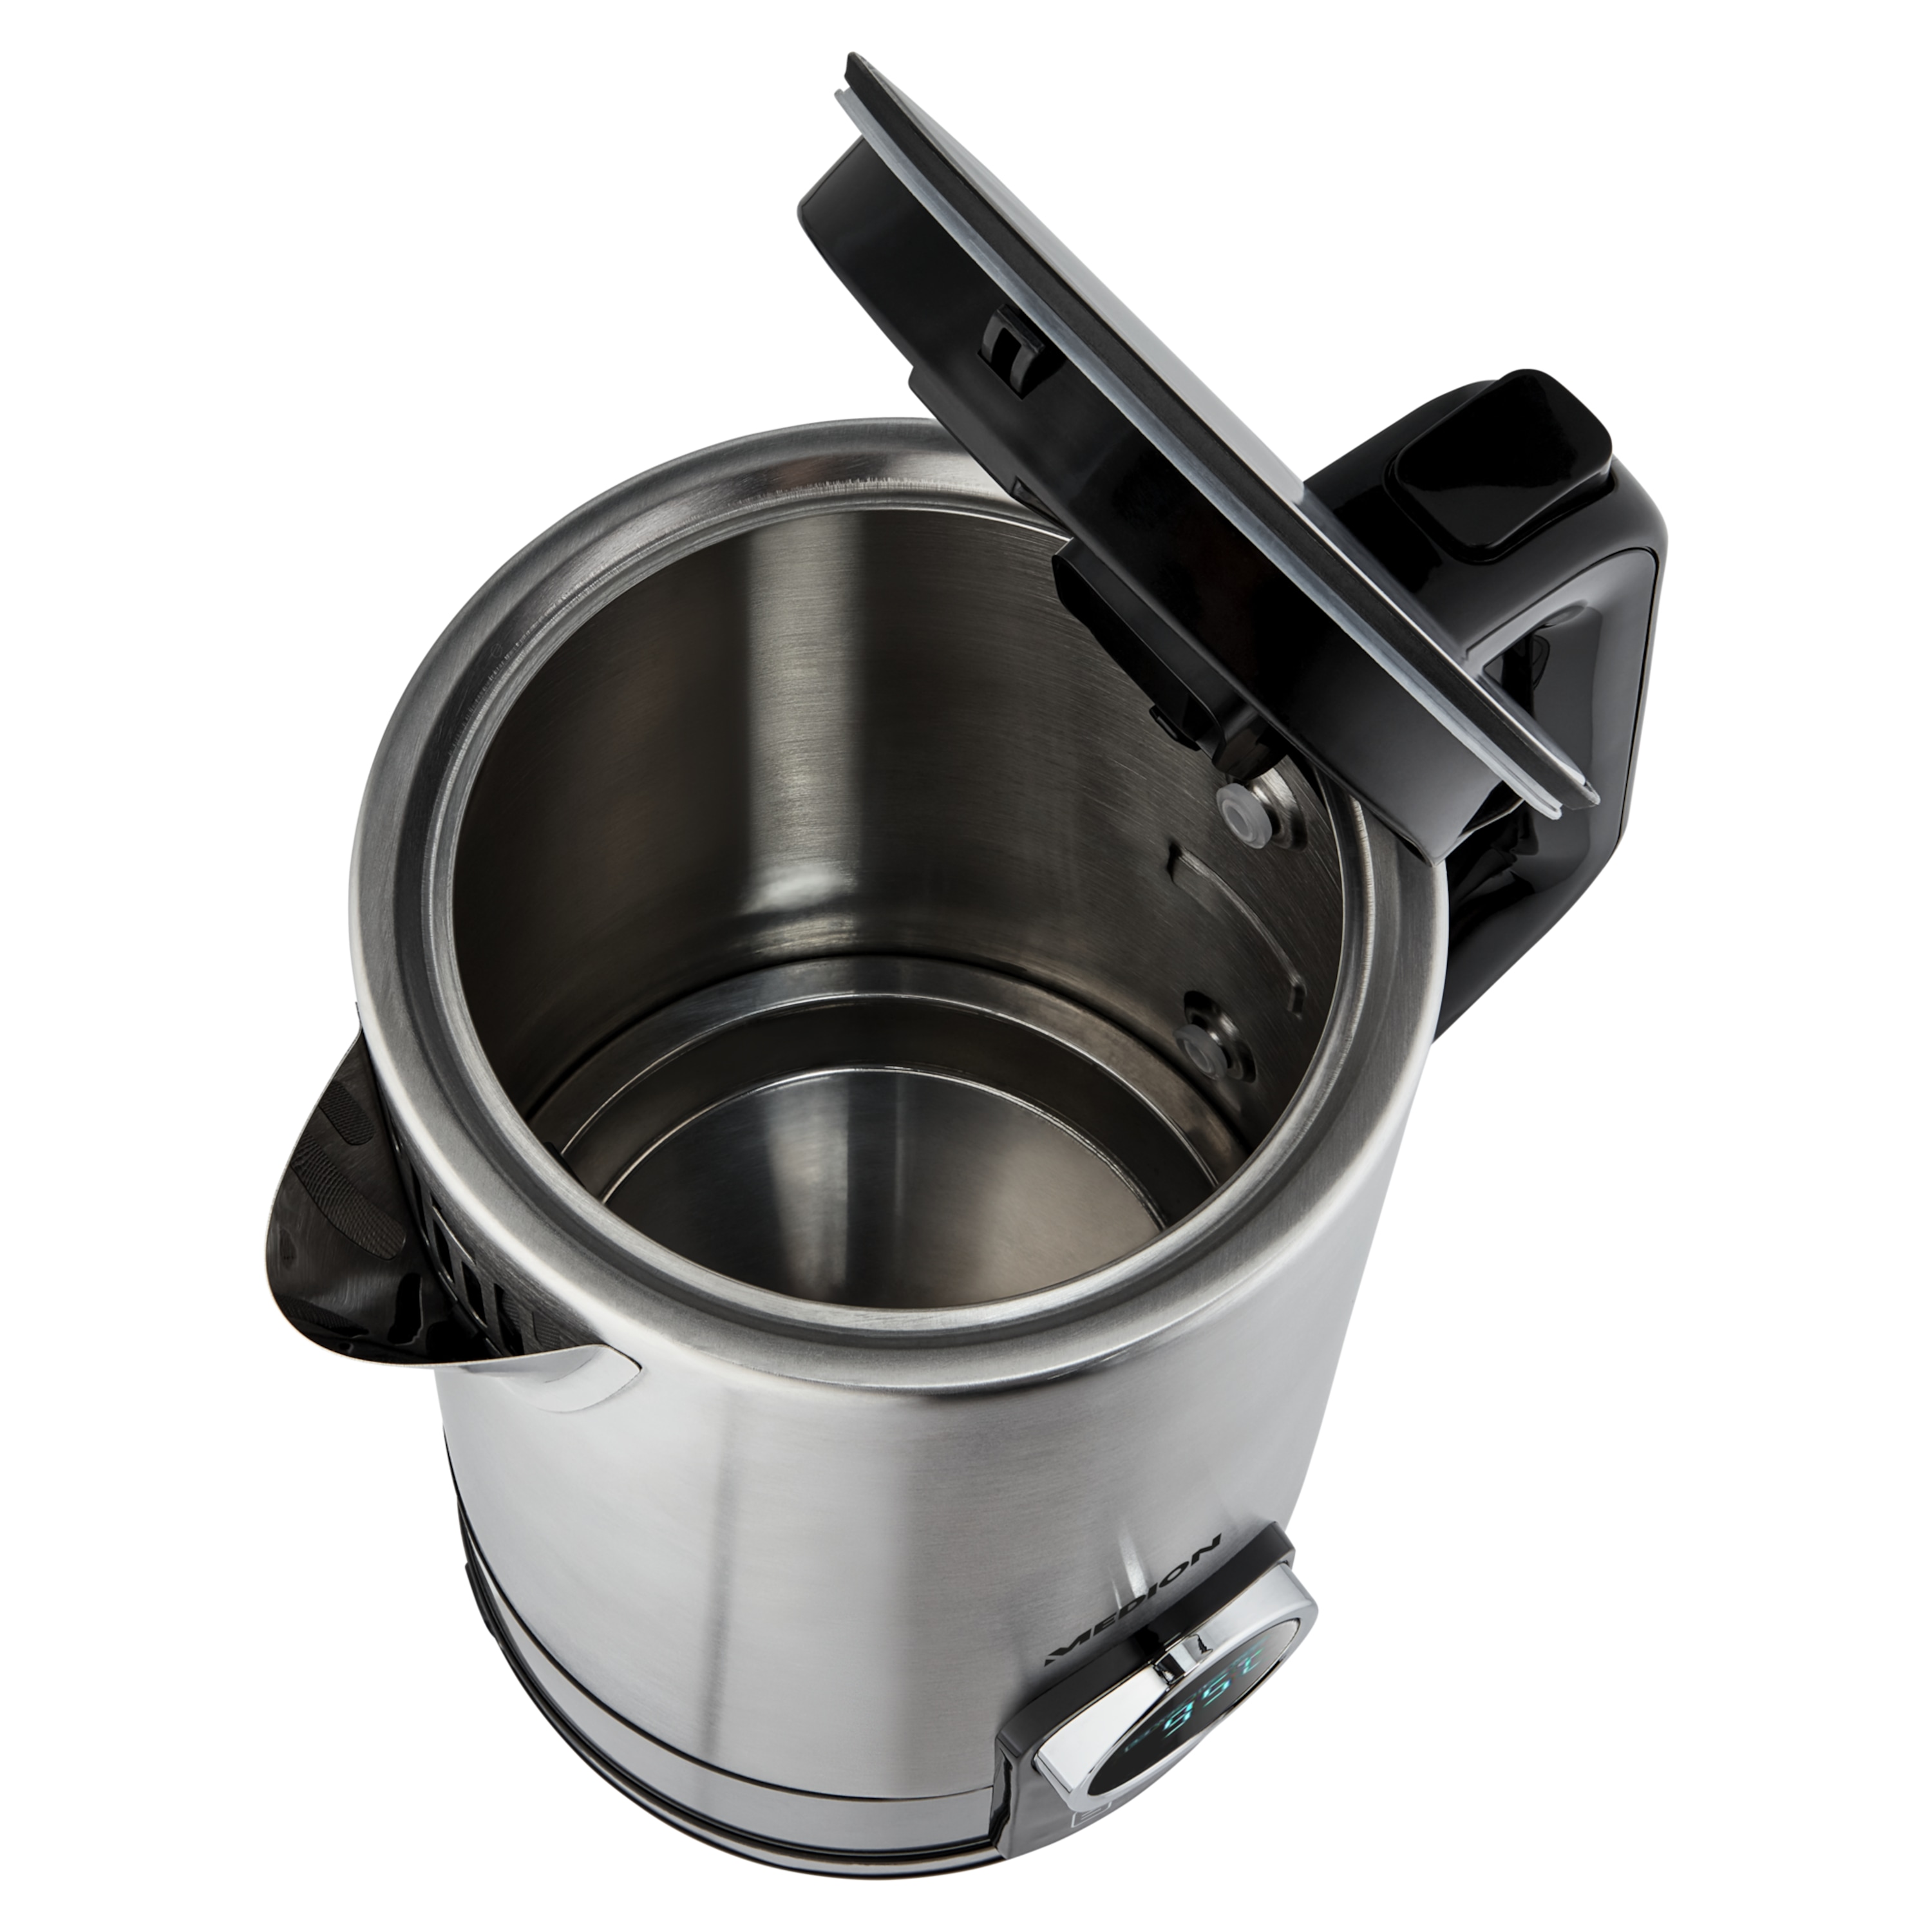 MEDION® Edelstahl Wasserkocher MD 10215 mit digitaler Temperatureinstellung, 2200 Watt Leistung, 1,7 Liter Fassungsvermögen, 360° Basisstation